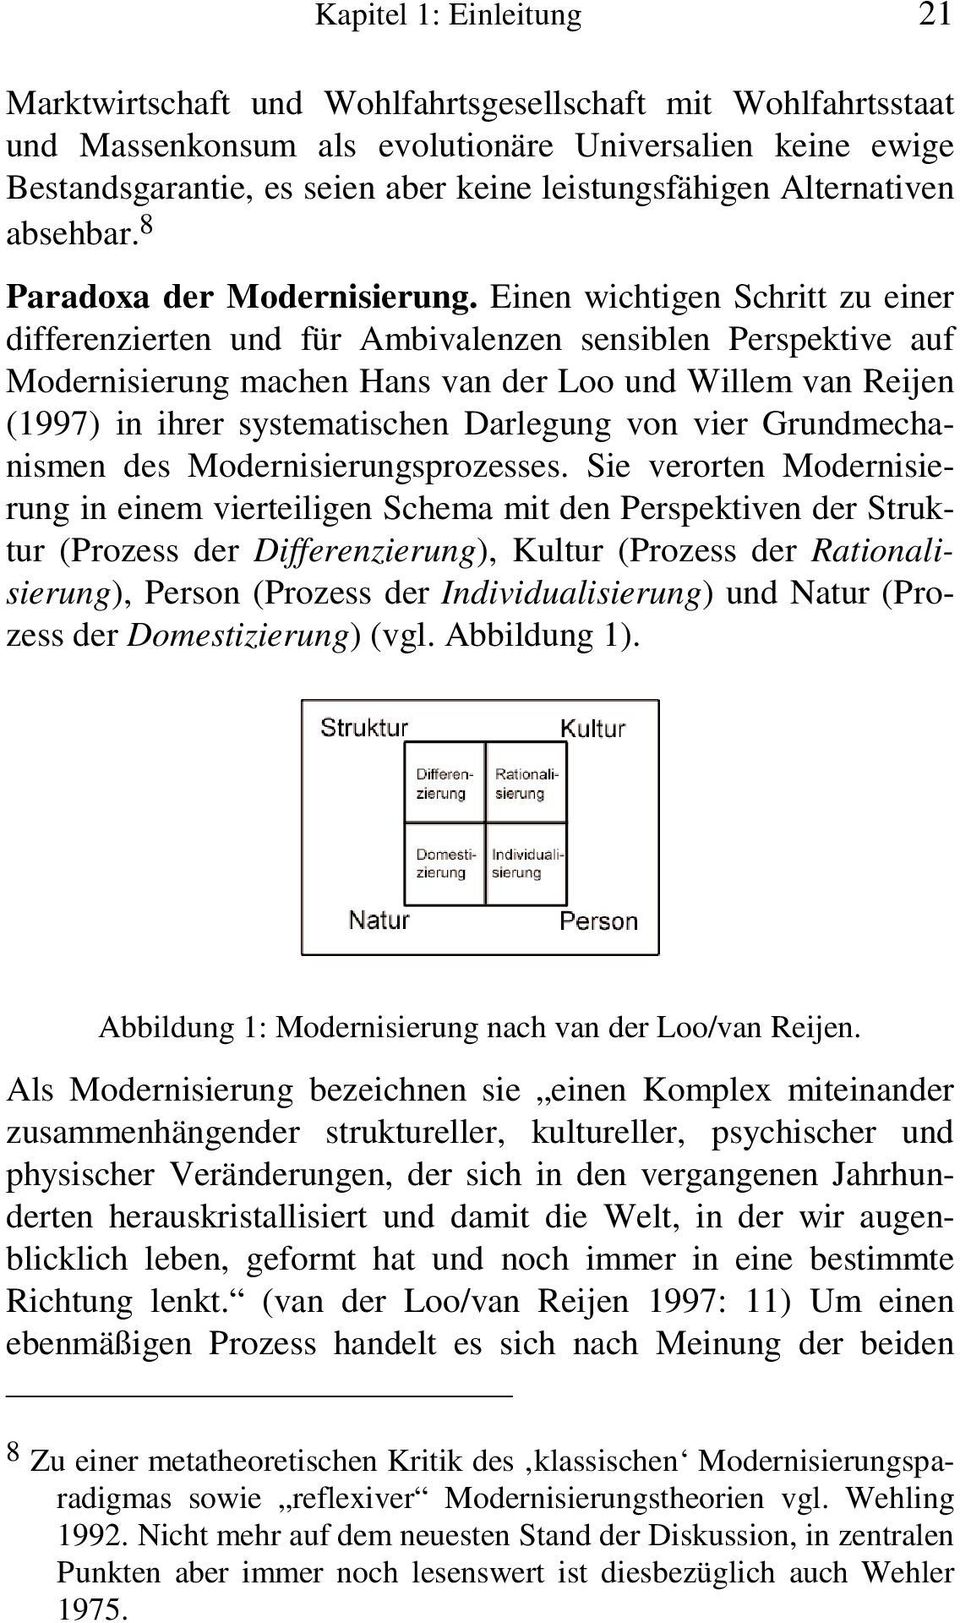 Einen wichtigen Schritt zu einer differenzierten und für Ambivalenzen sensiblen Perspektive auf Modernisierung machen Hans van der Loo und Willem van Reijen (1997) in ihrer systematischen Darlegung